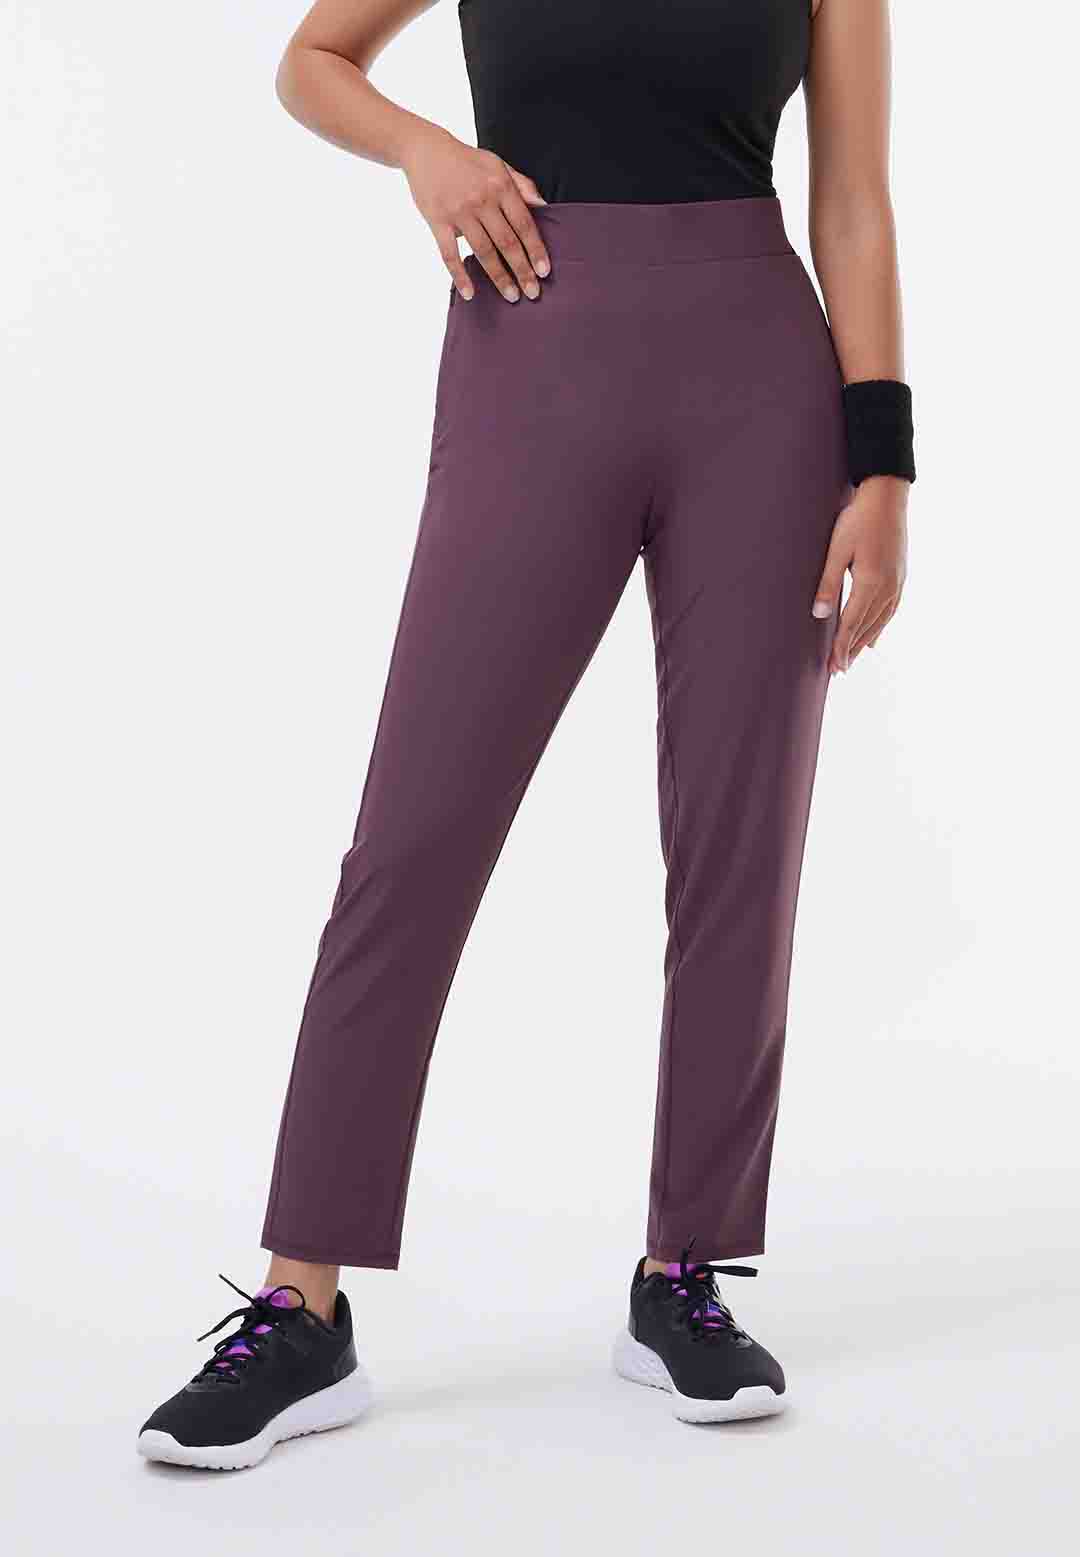 Buy Formal Trousers for Women Online by Blissclub